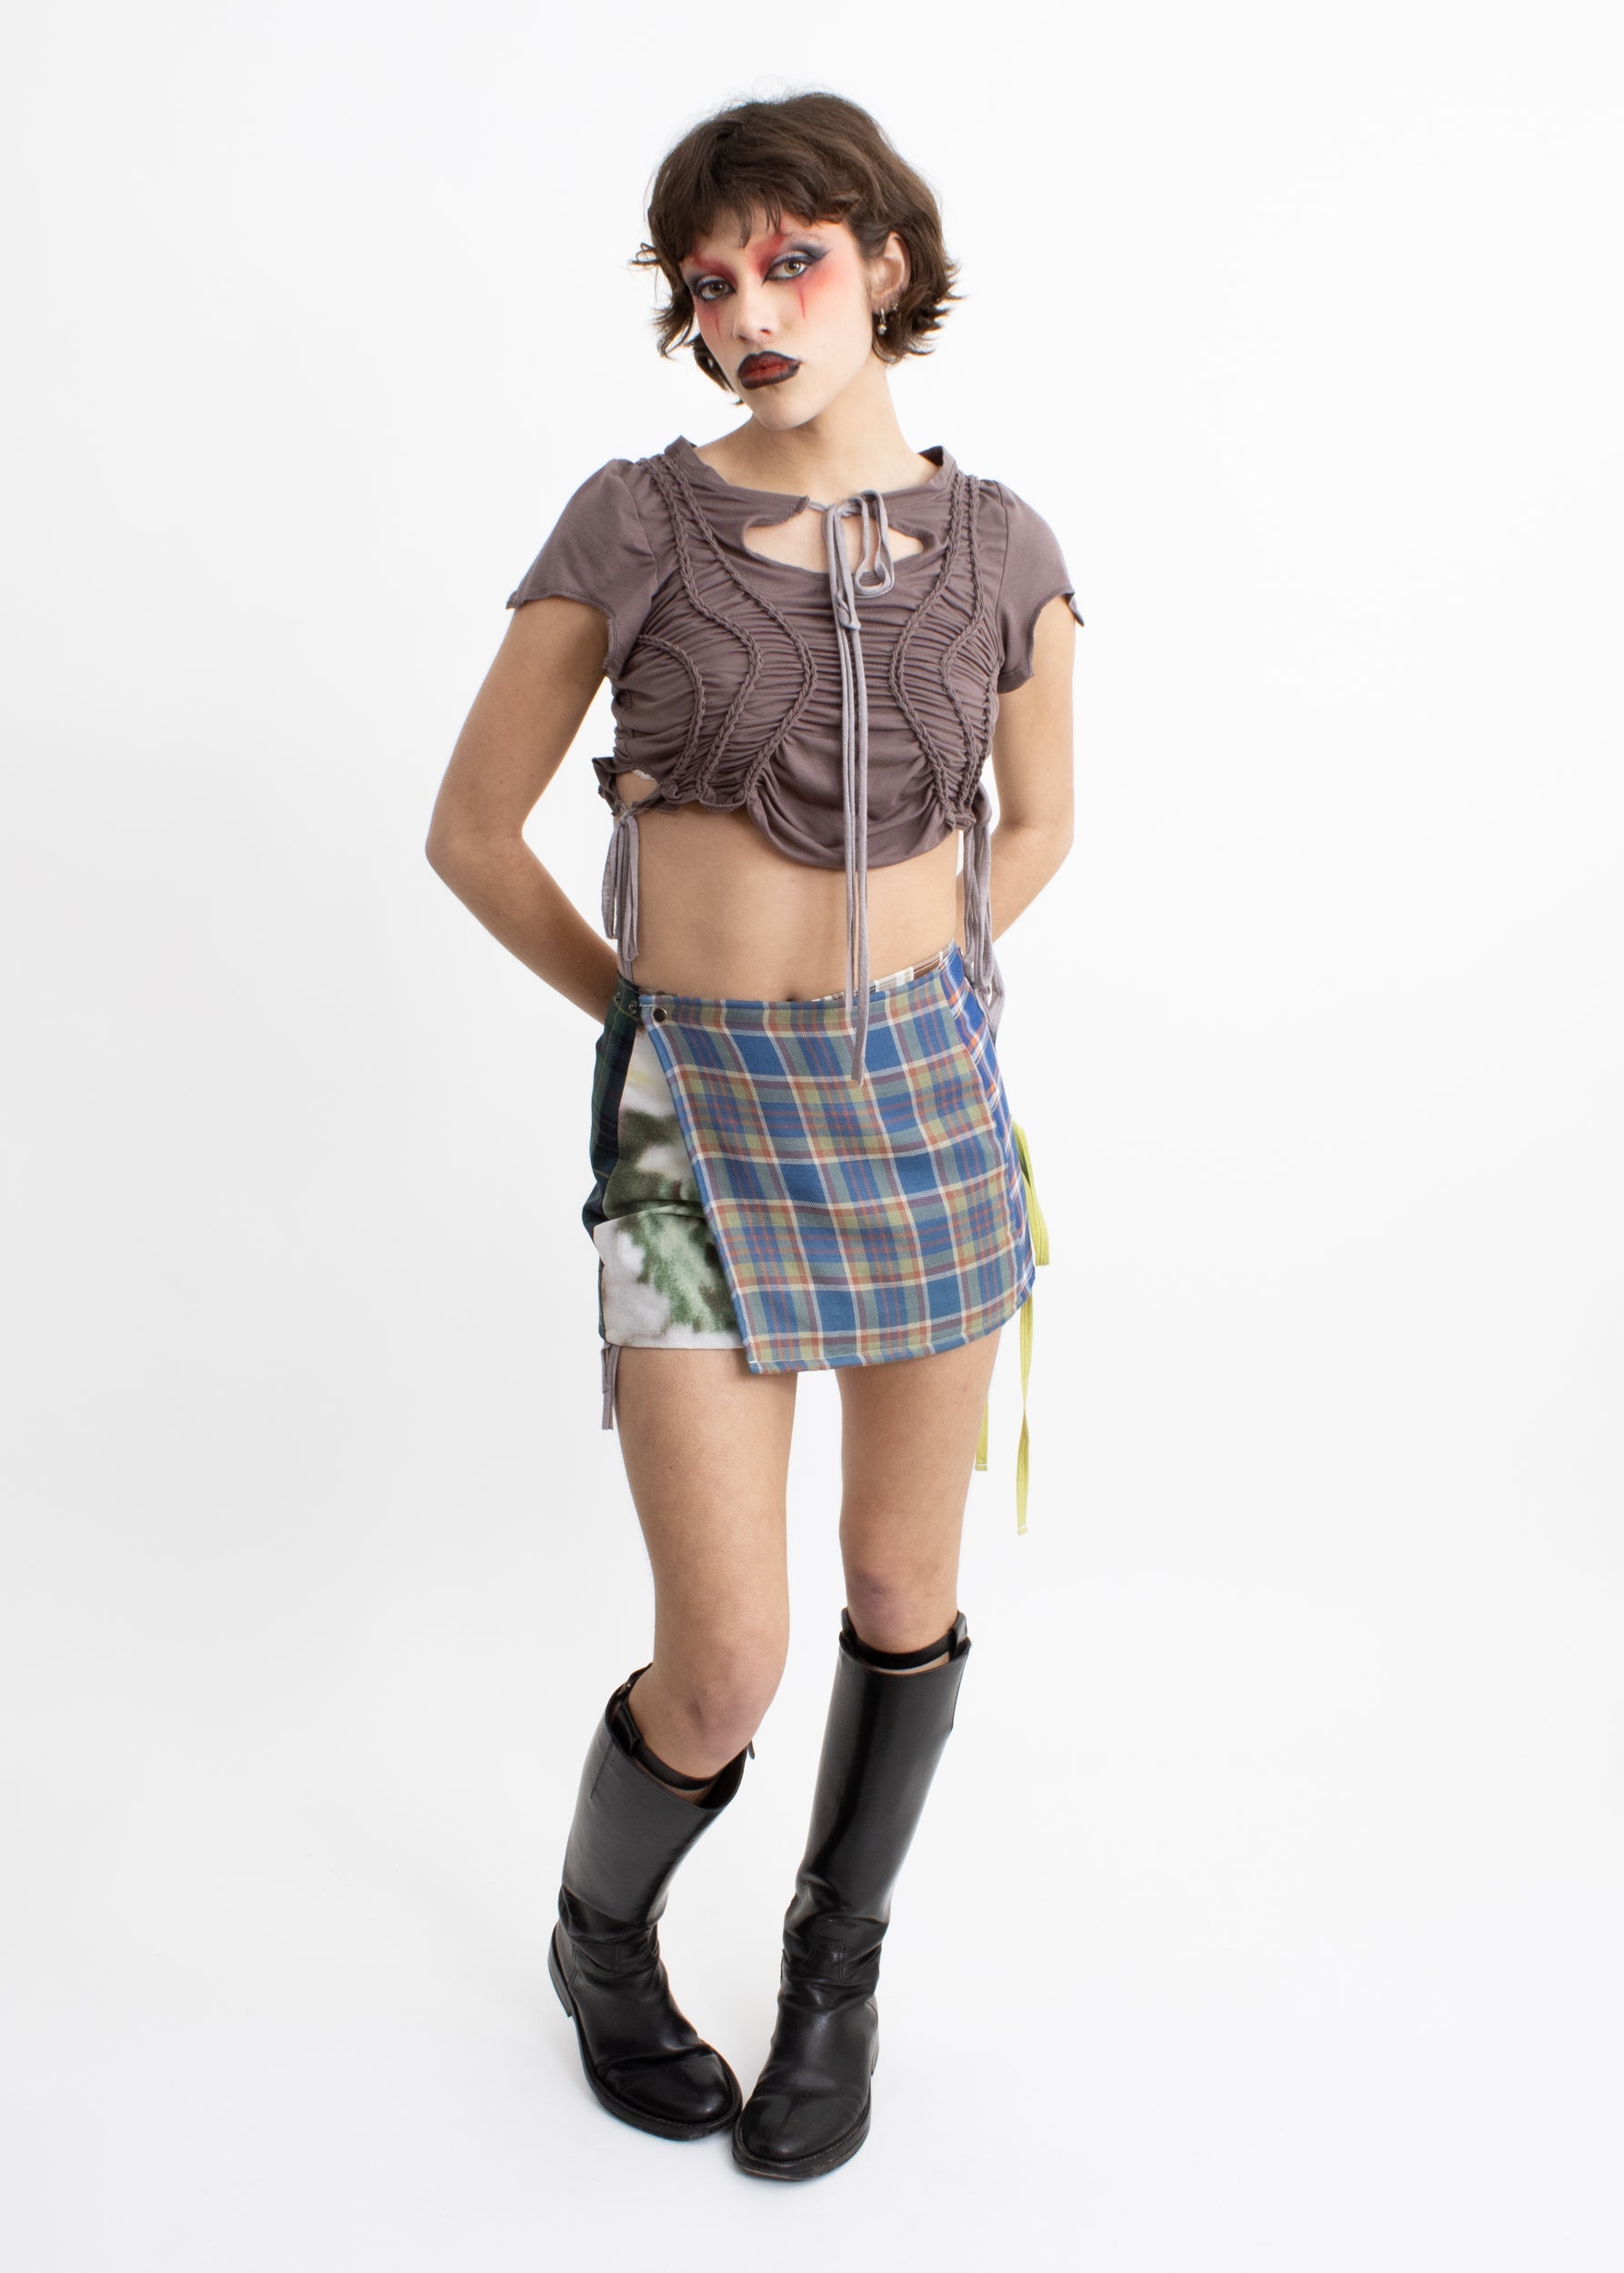 Laurence Sabrine Mash Mini Skirt- size 1 (6-8)